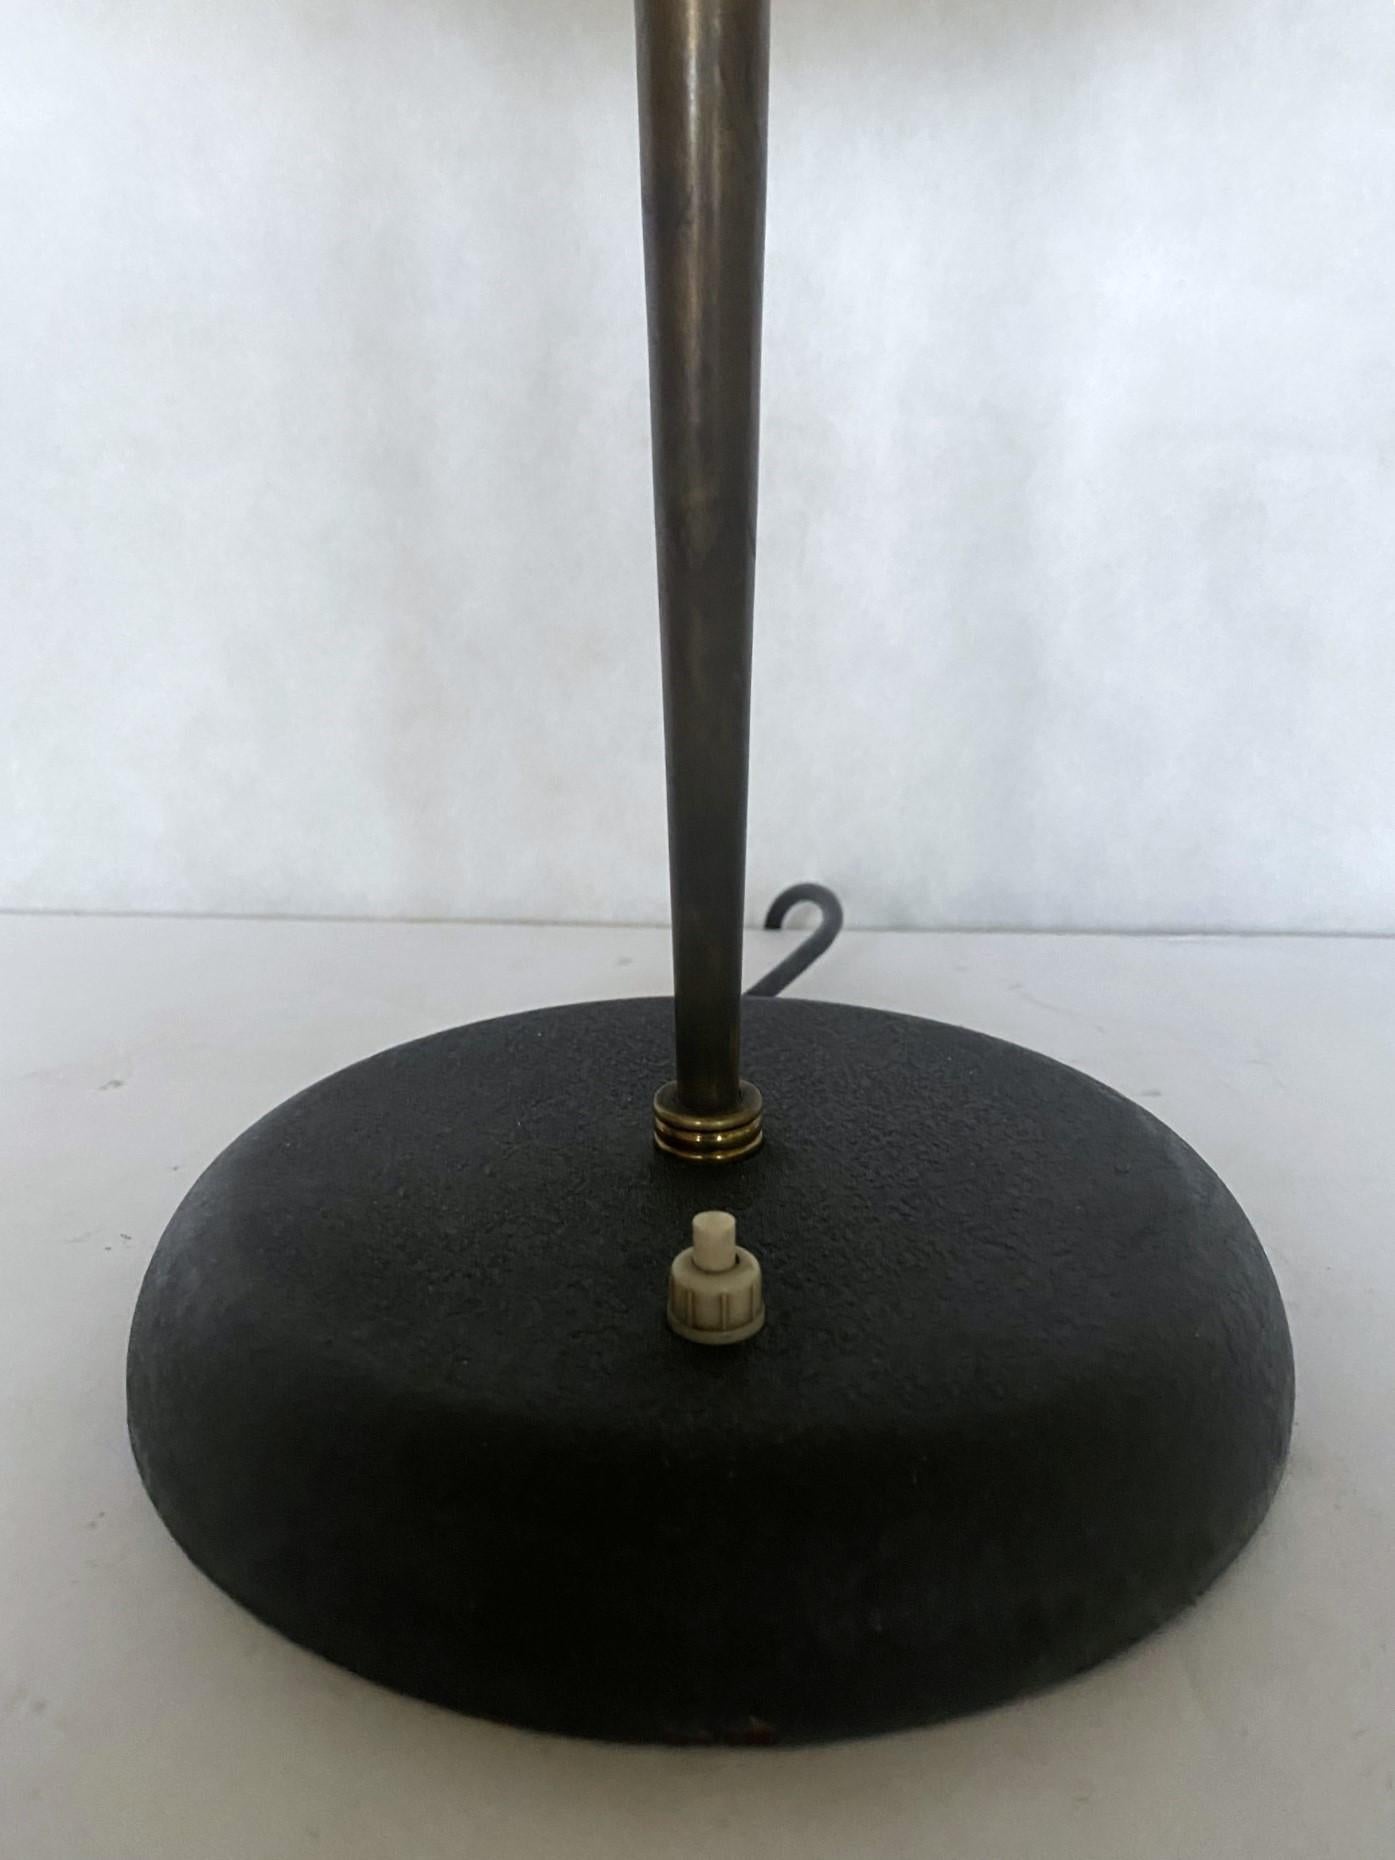 Midcentury Stilnovo Desk or Table Lamp Brass Black Enameled Metal, Iataly, 1950s For Sale 5